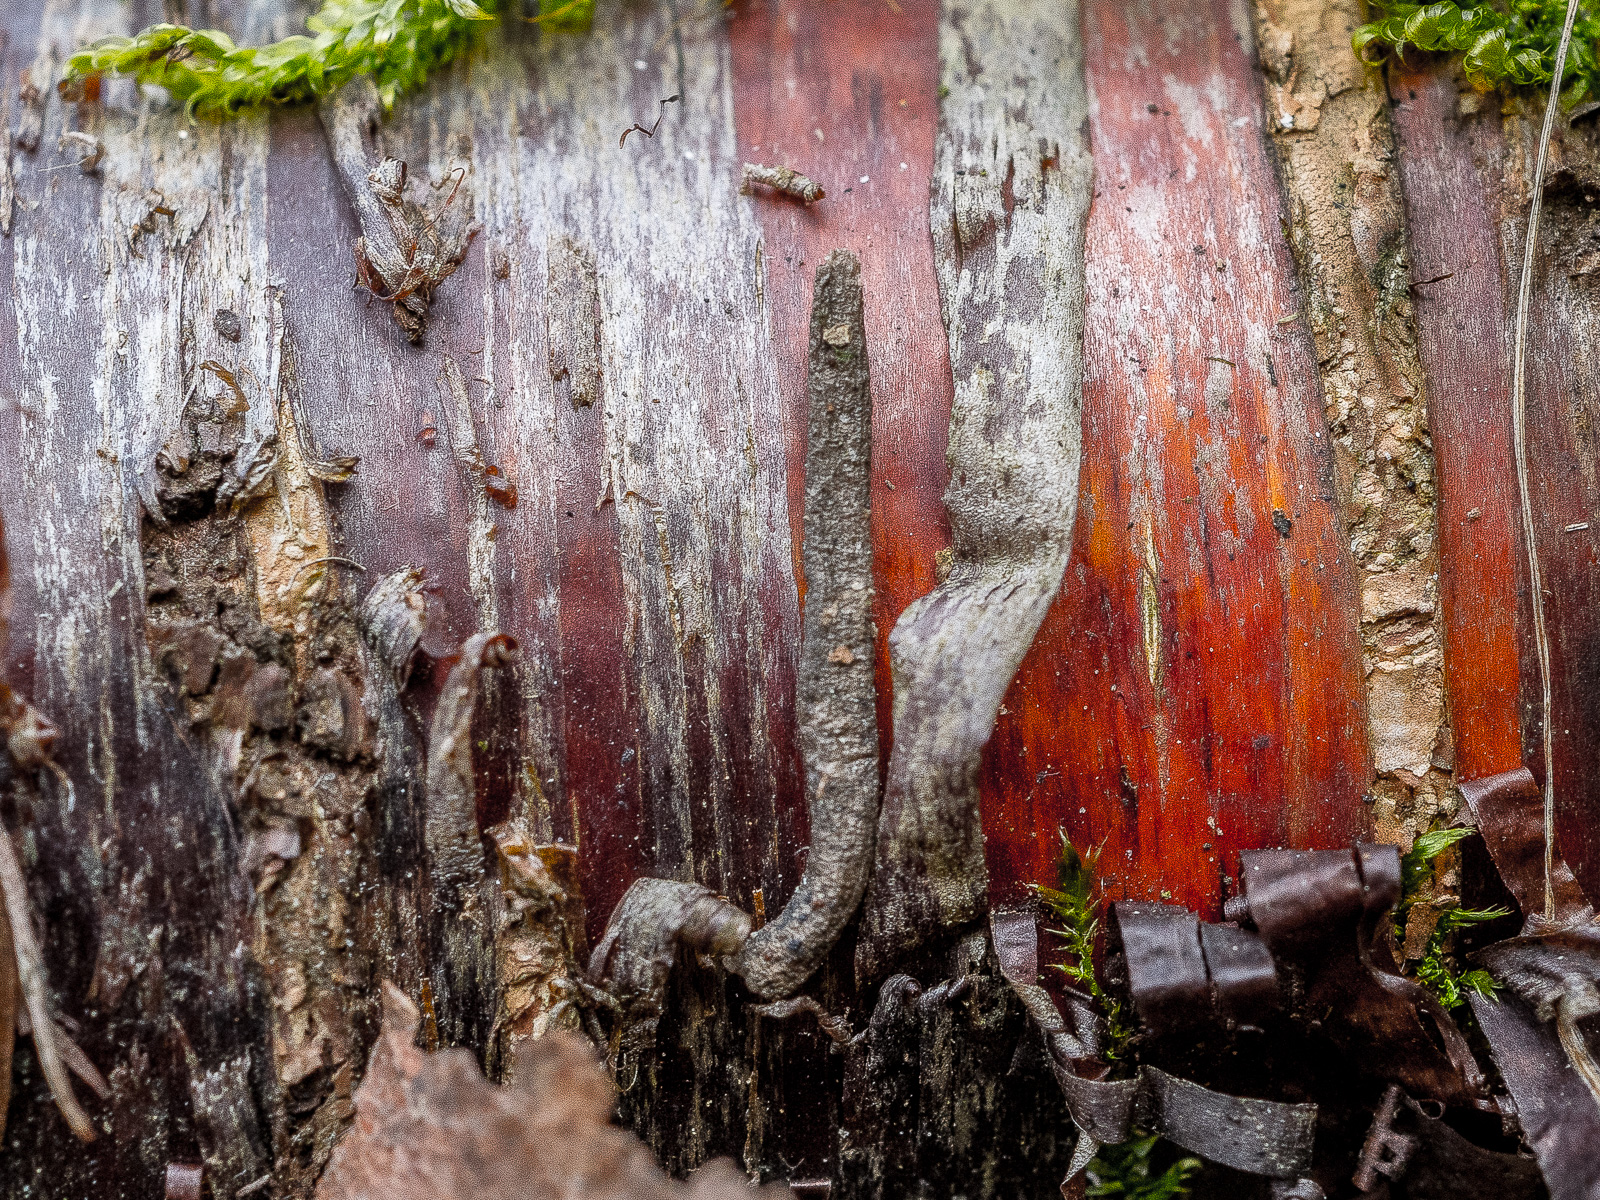 Der Stamm einer Birke in enger Nahaufnahme. Die Rinde schält sich ab, darunter ist das Holz intensiv rot.